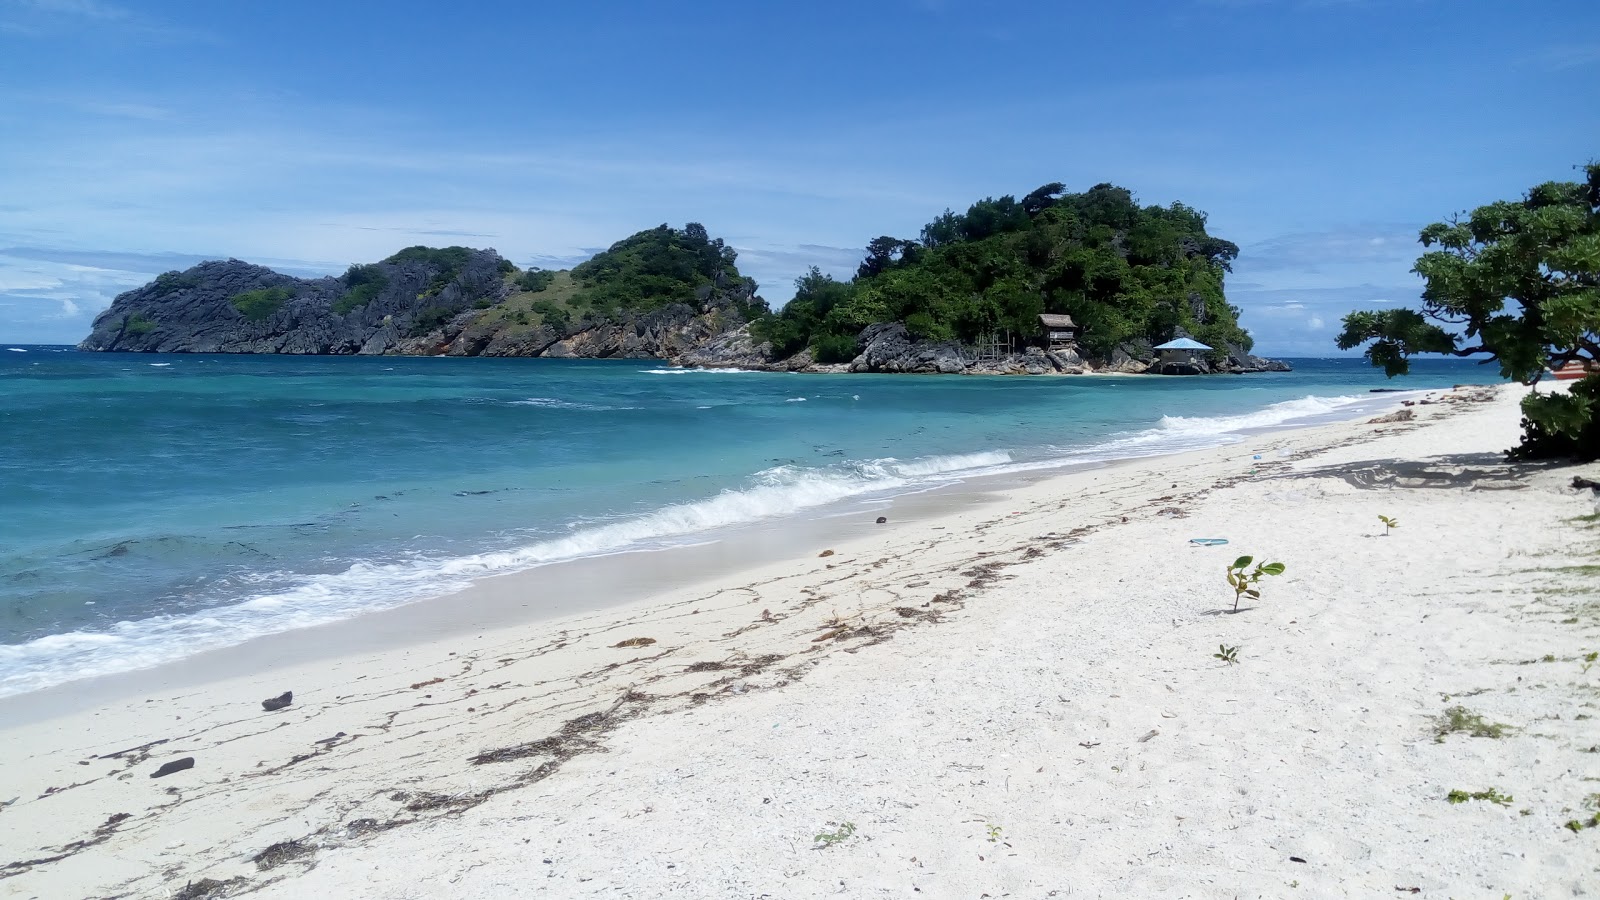 Foto von Buyayao Island Resort - beliebter Ort unter Entspannungskennern